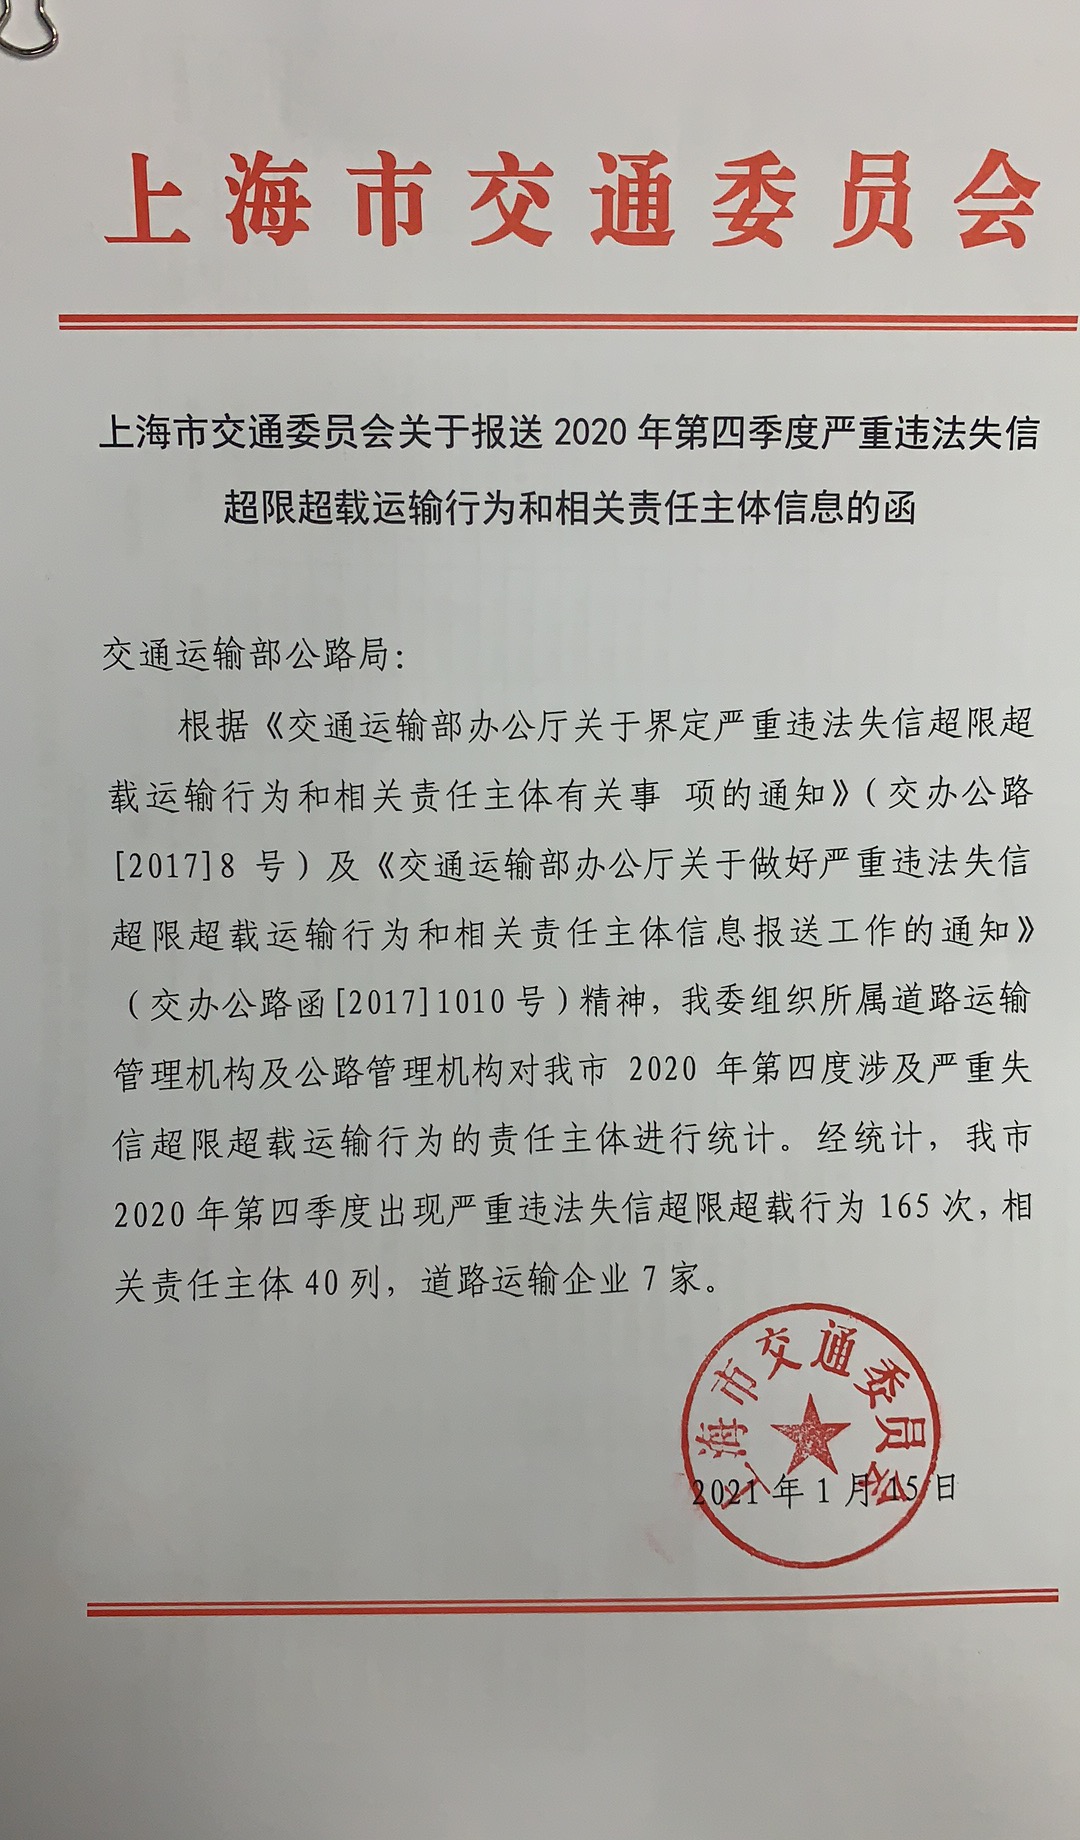 上海市交通委关于报送2020年第四季度治超失信名单的函.jpg